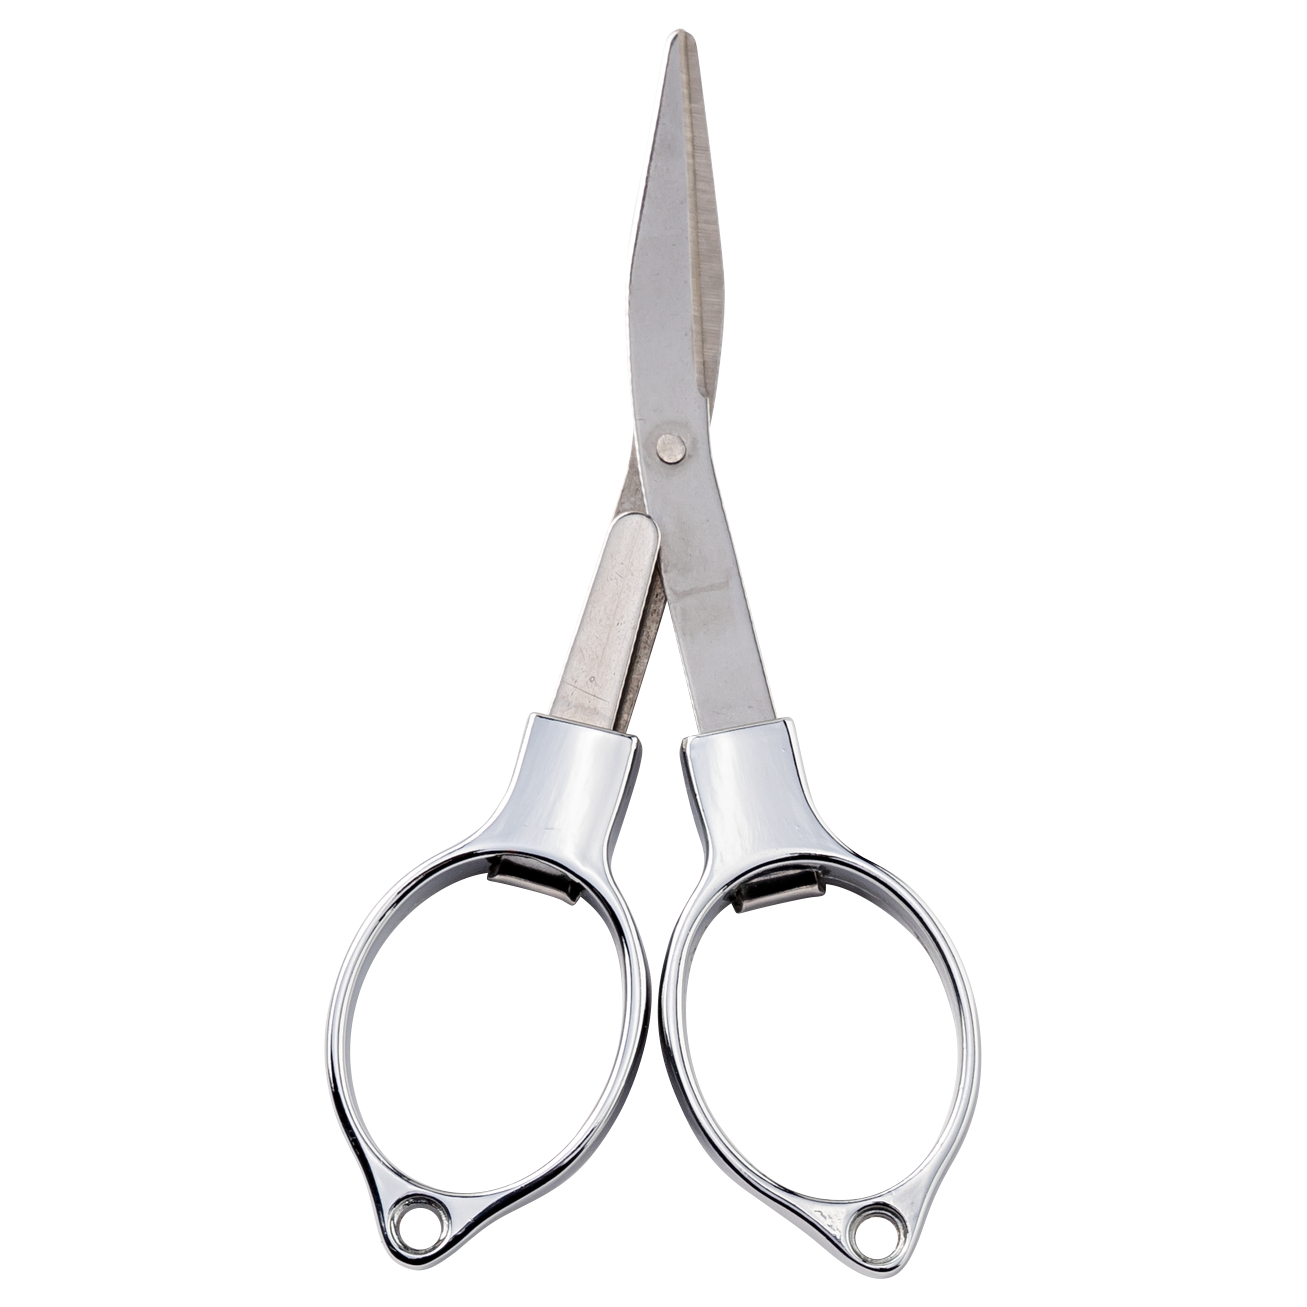 Perca Original Angler folding scissors (full metal) 